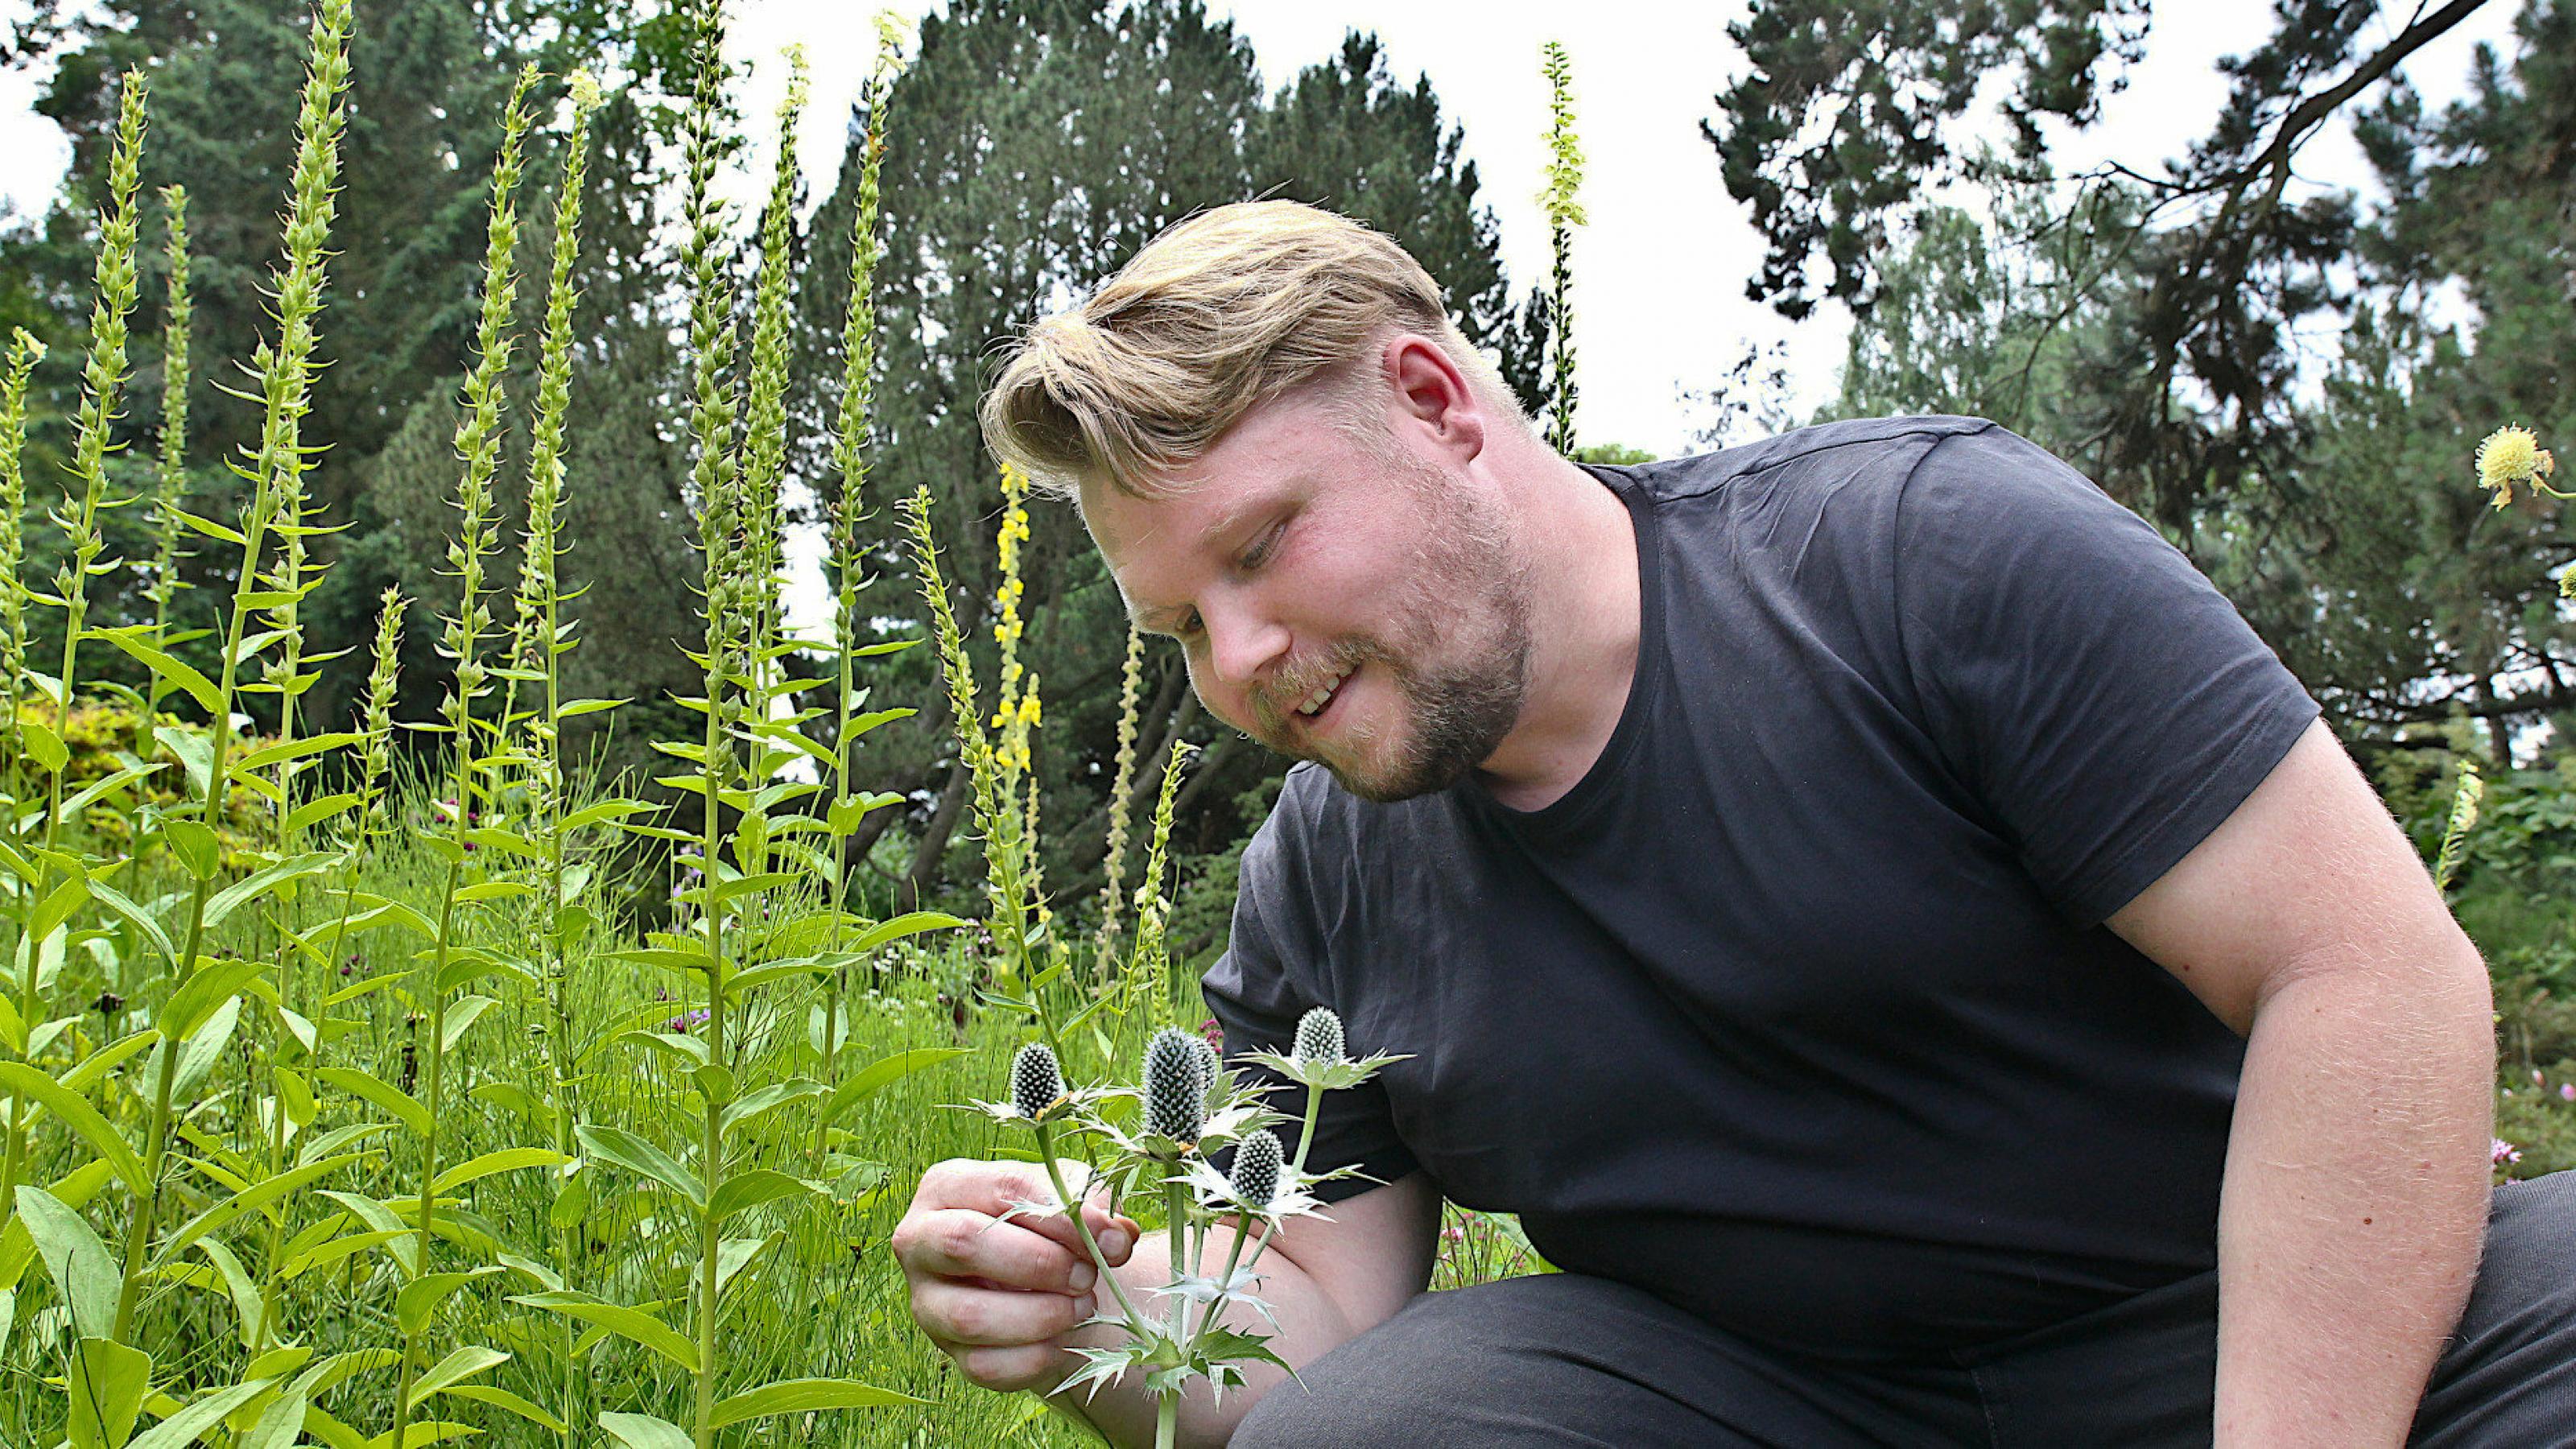 Käferforscher Thomas Hörren kniet vor ein Edeldistel und sucht an einem Blatt nach Käfern; hohe Vegetation im Hintergrund